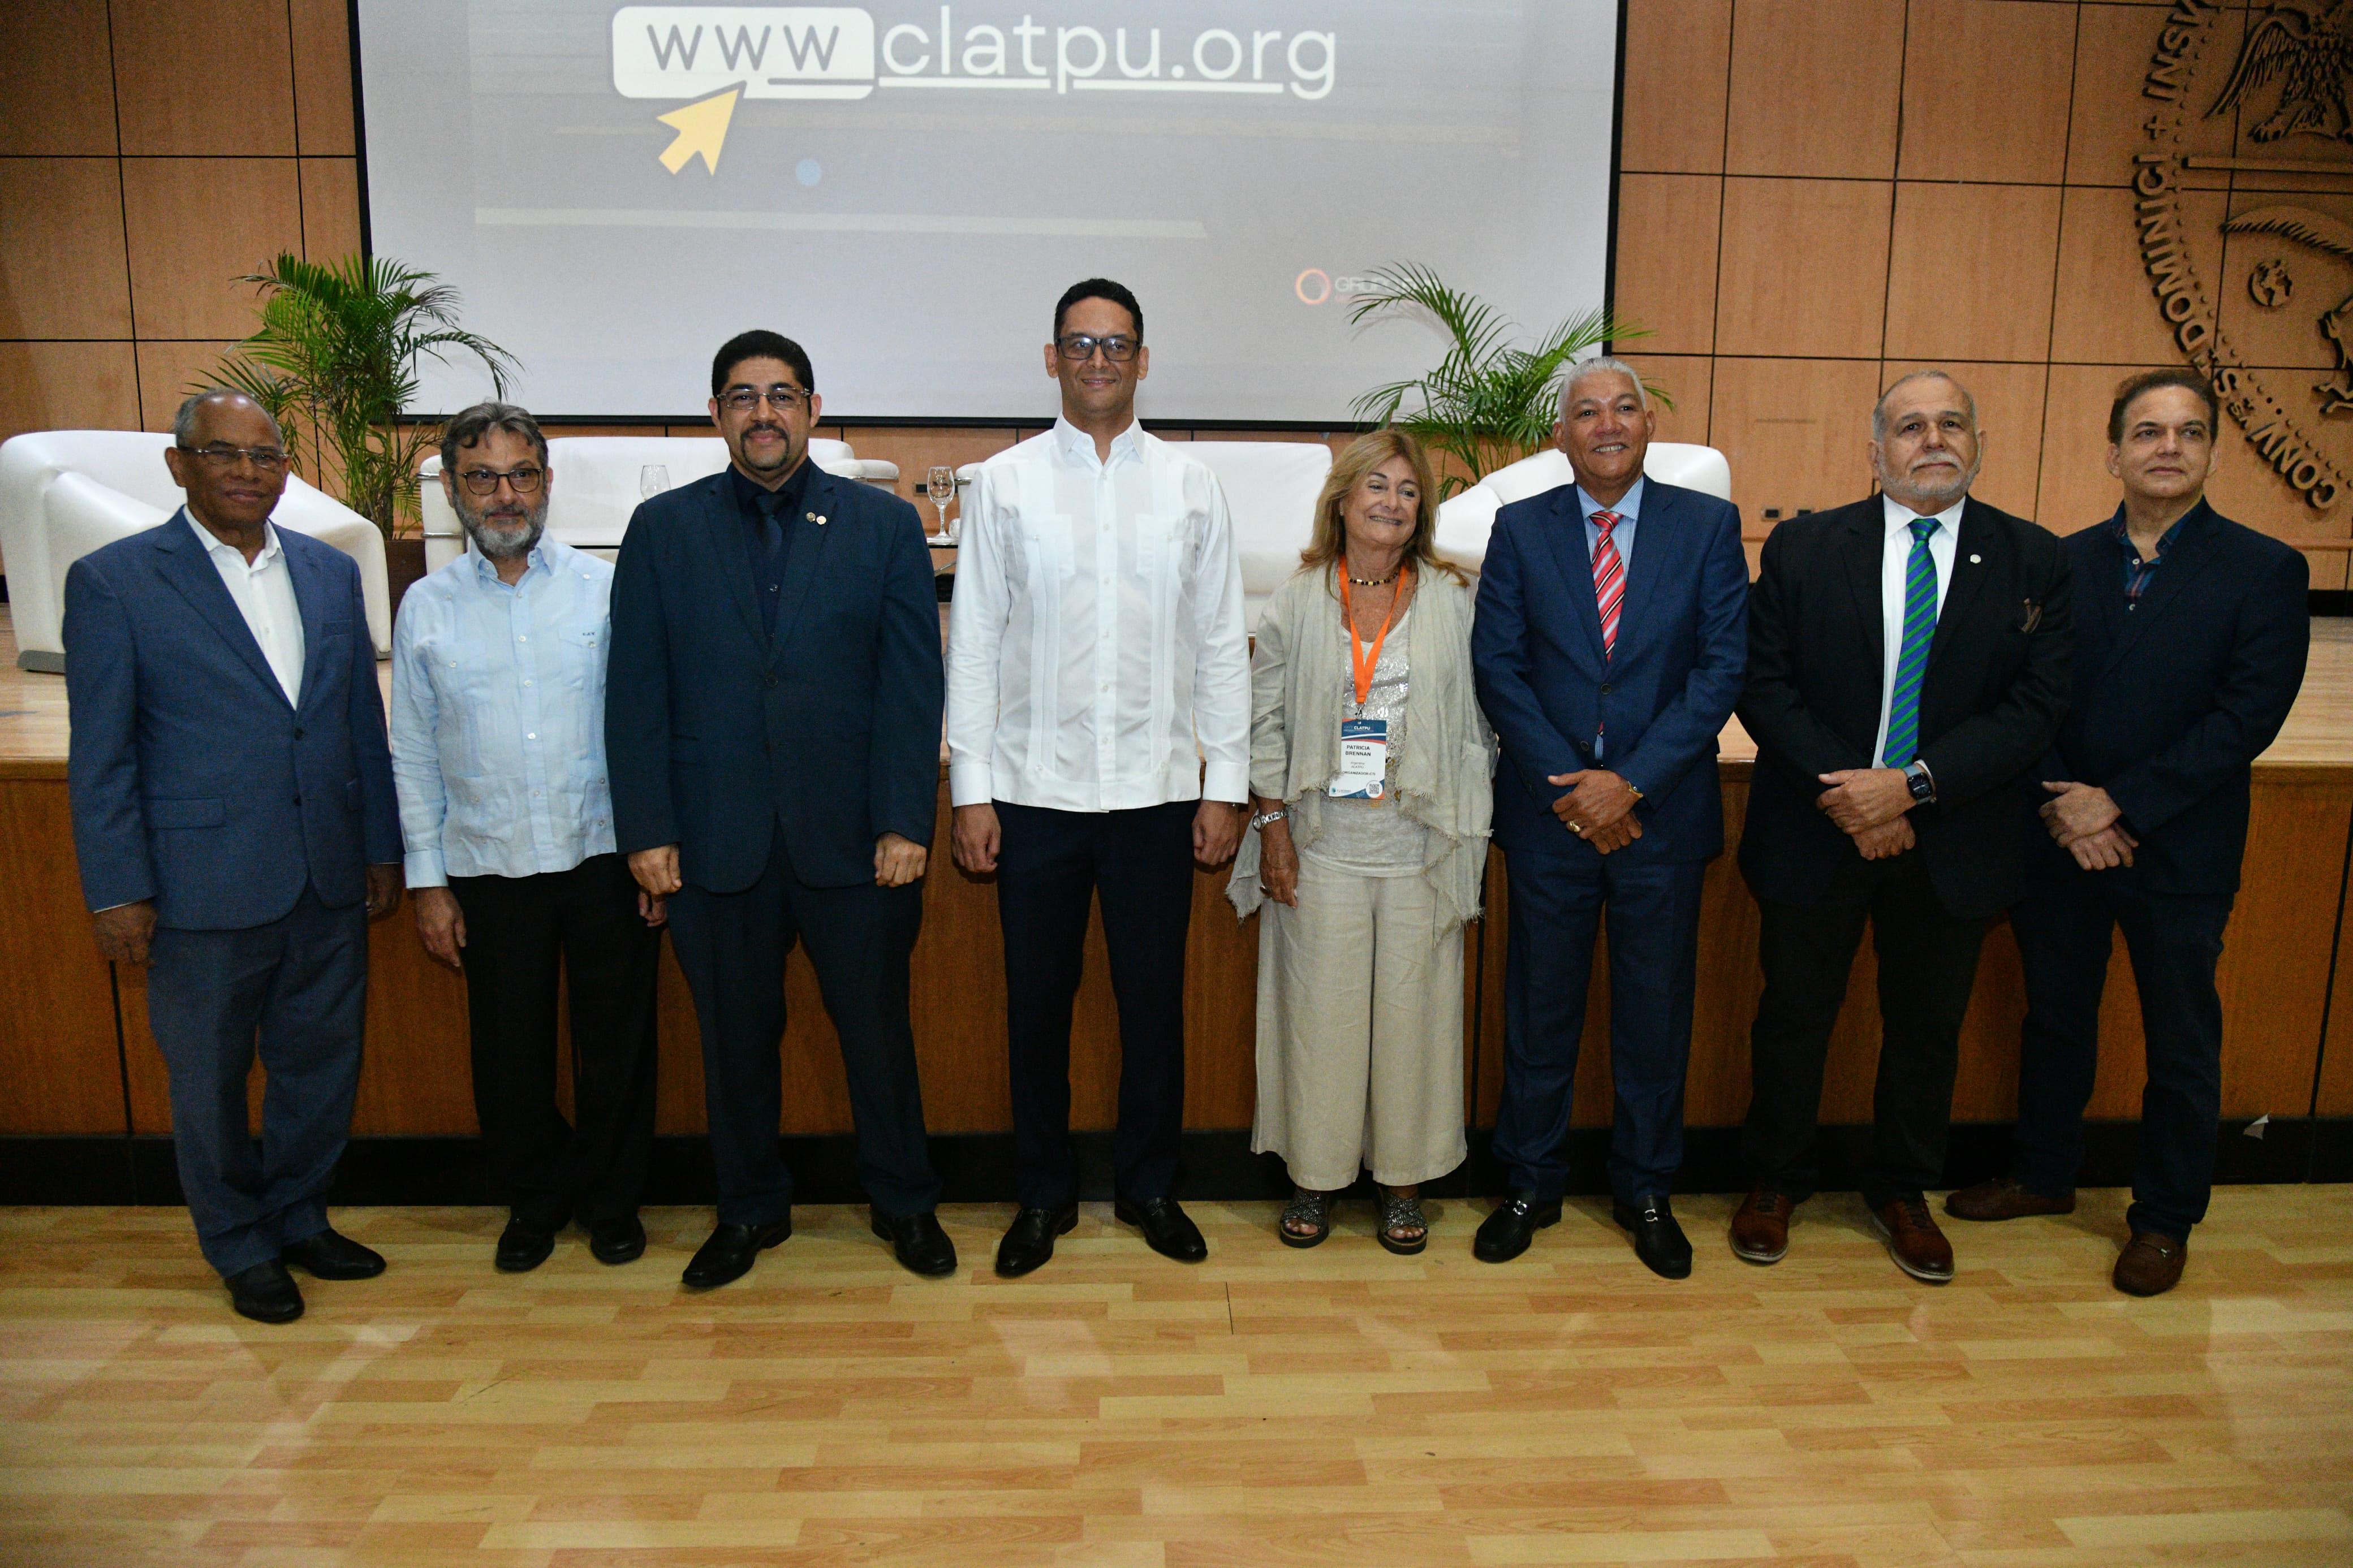 REPÚBLICA DOMINICANA: Director del Intrant participa en el XXII Congreso Latinoamericano de Transporte Público y Urbano, que se realiza en el país